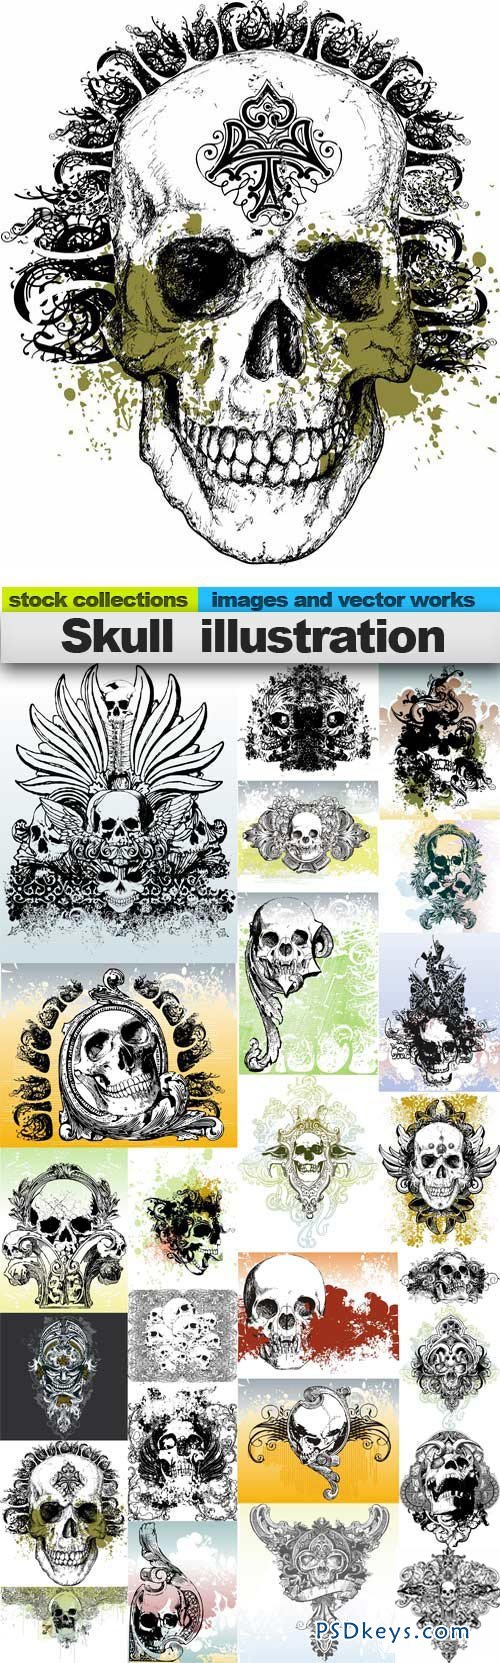 Skull illustration 25xUHQ JPEG